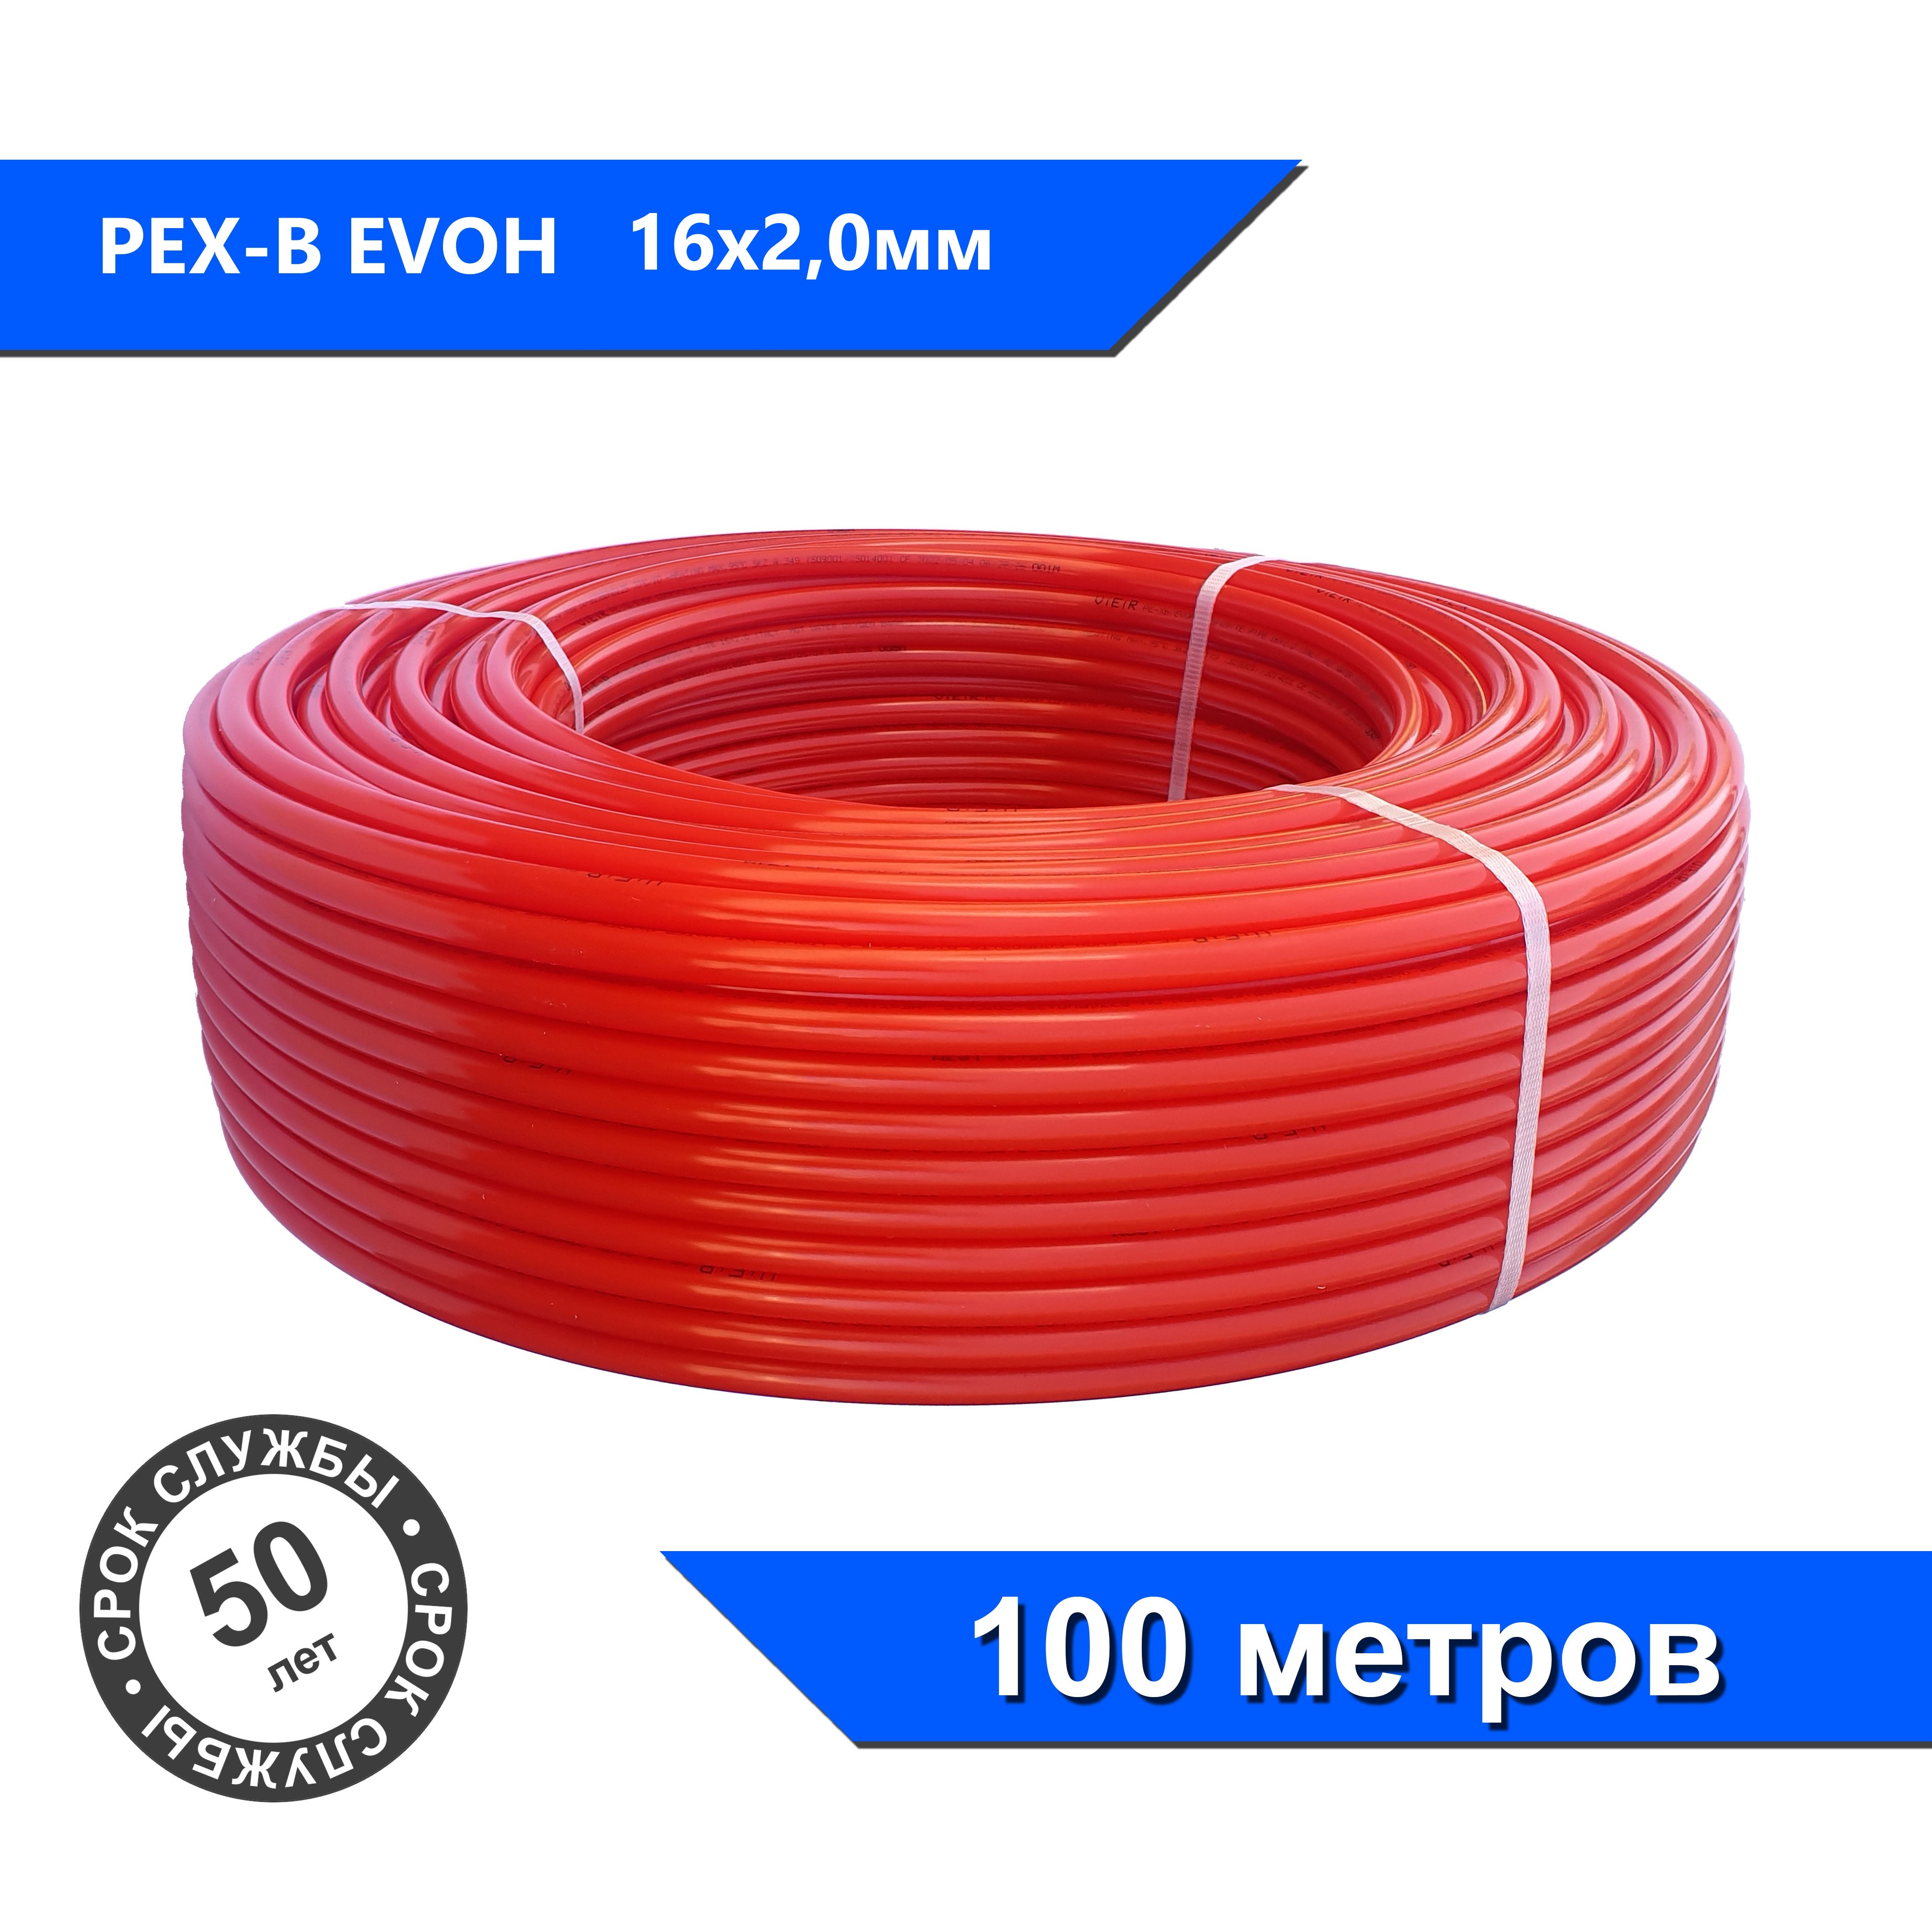 Труба из сшитого полиэтилена VIEIR с кислородным слоем 100м Pex-B EVOH 16x2,0, красная труба rautitan flex 20х2 8мм универсальная серая сшитый полиэтилен 100м